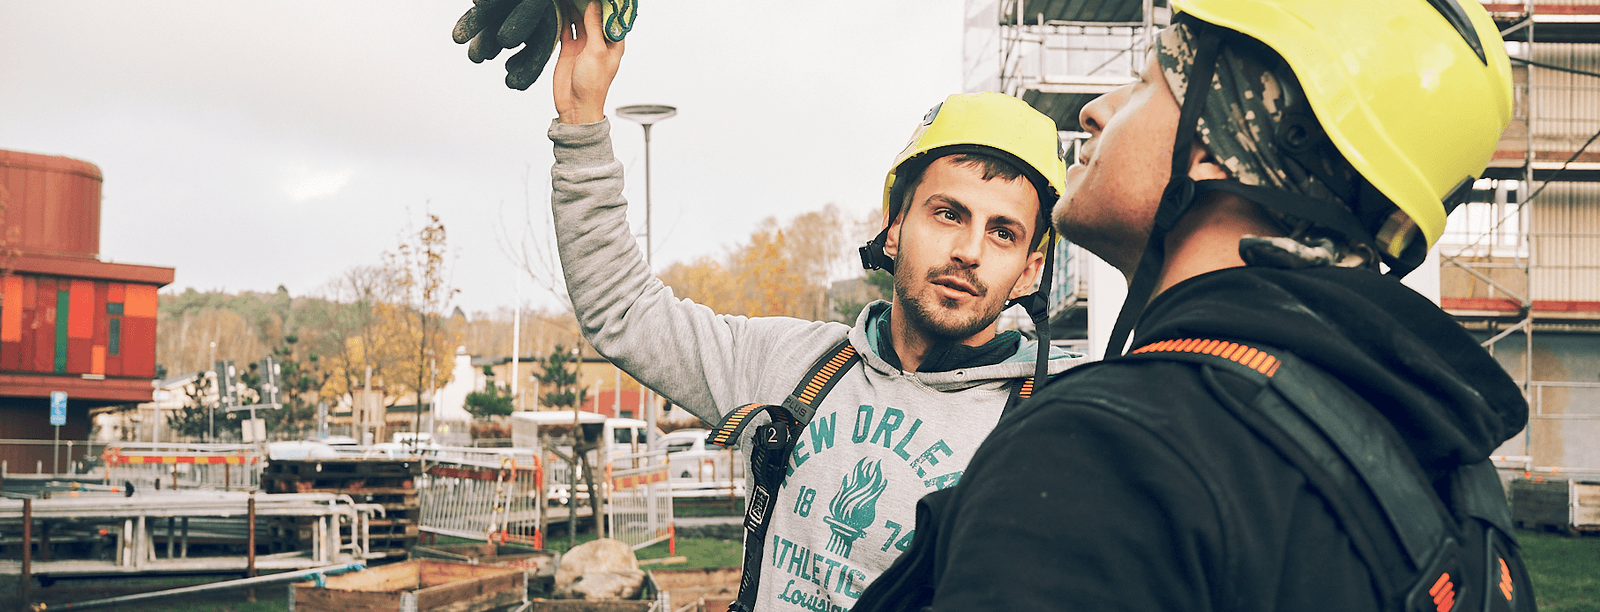 Bild på två byggarbetare, håller upp handske - säkerhet